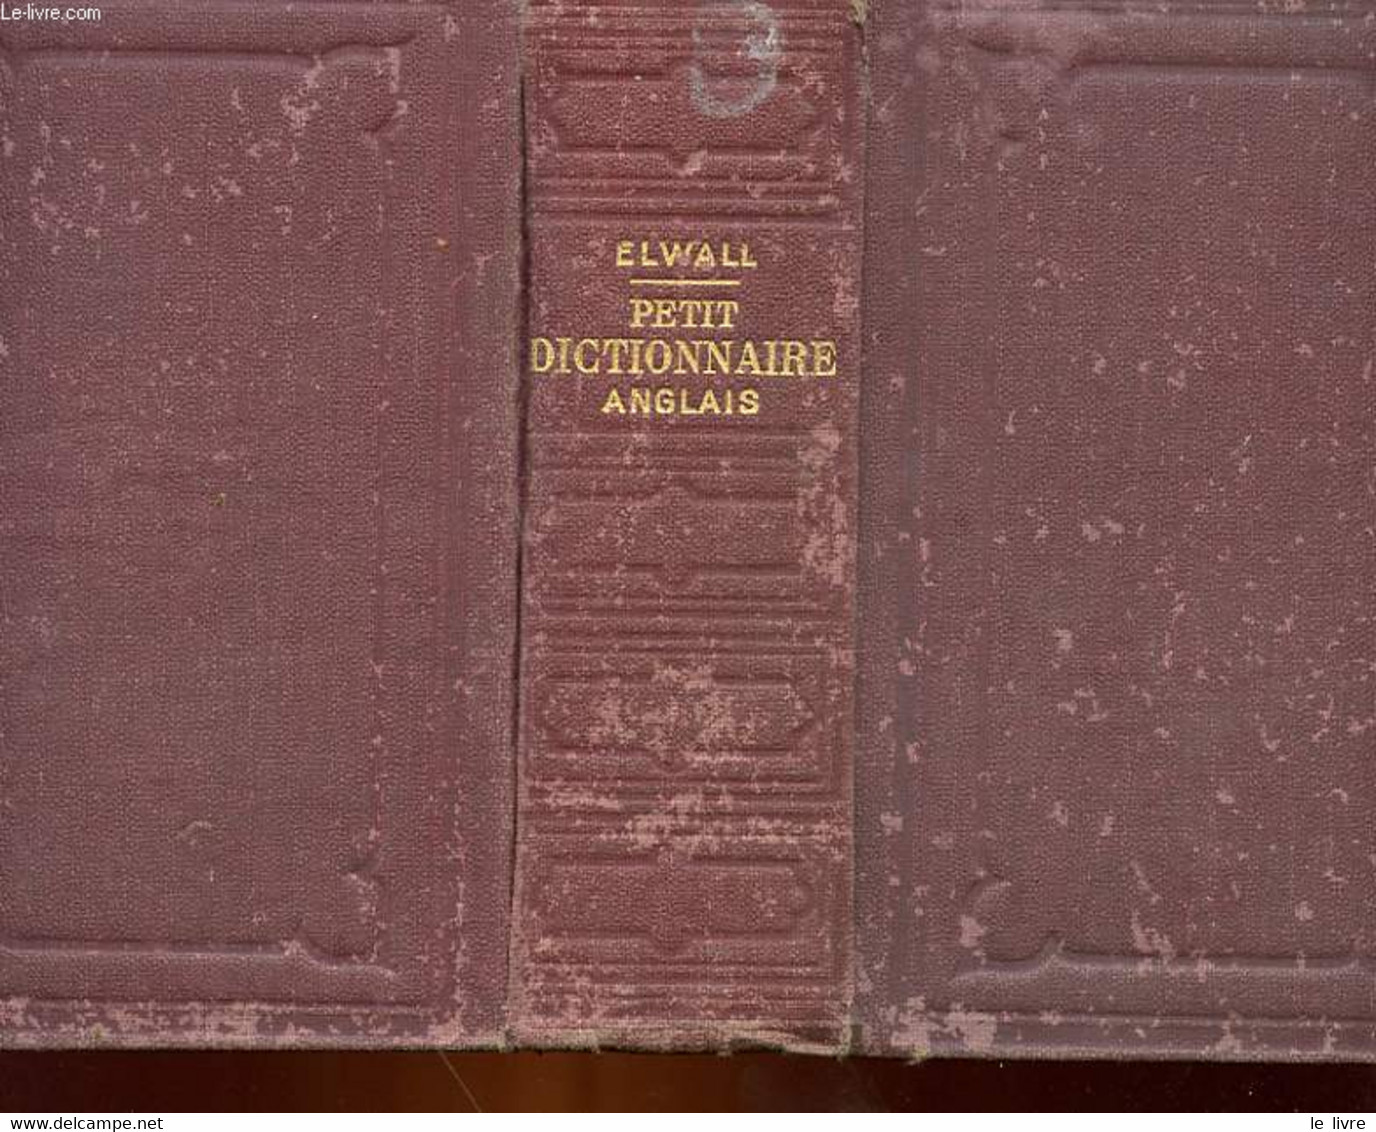 PETIT DICTIONNAIRE ANGLAIS-FRANCAIS ET FRANCAIS-ANGLAIS A L'USAGE DES COURS ELEMENTAIRES - ELWALL ALFRED - 1926 - Dictionaries, Thesauri